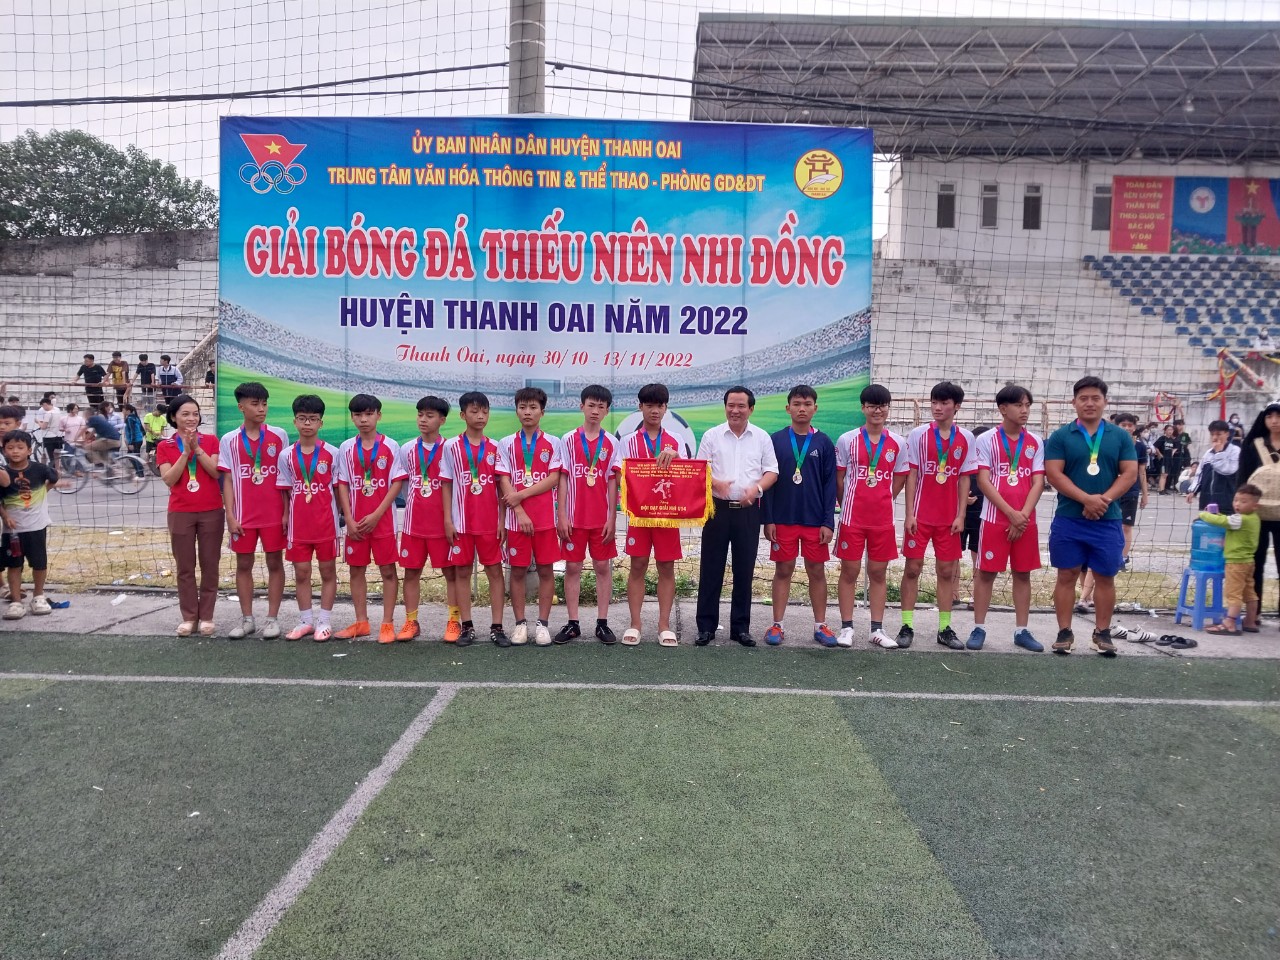 Chung kết giải bóng đá thiếu niên nhi đồng huyện Thanh Oai năm 2022